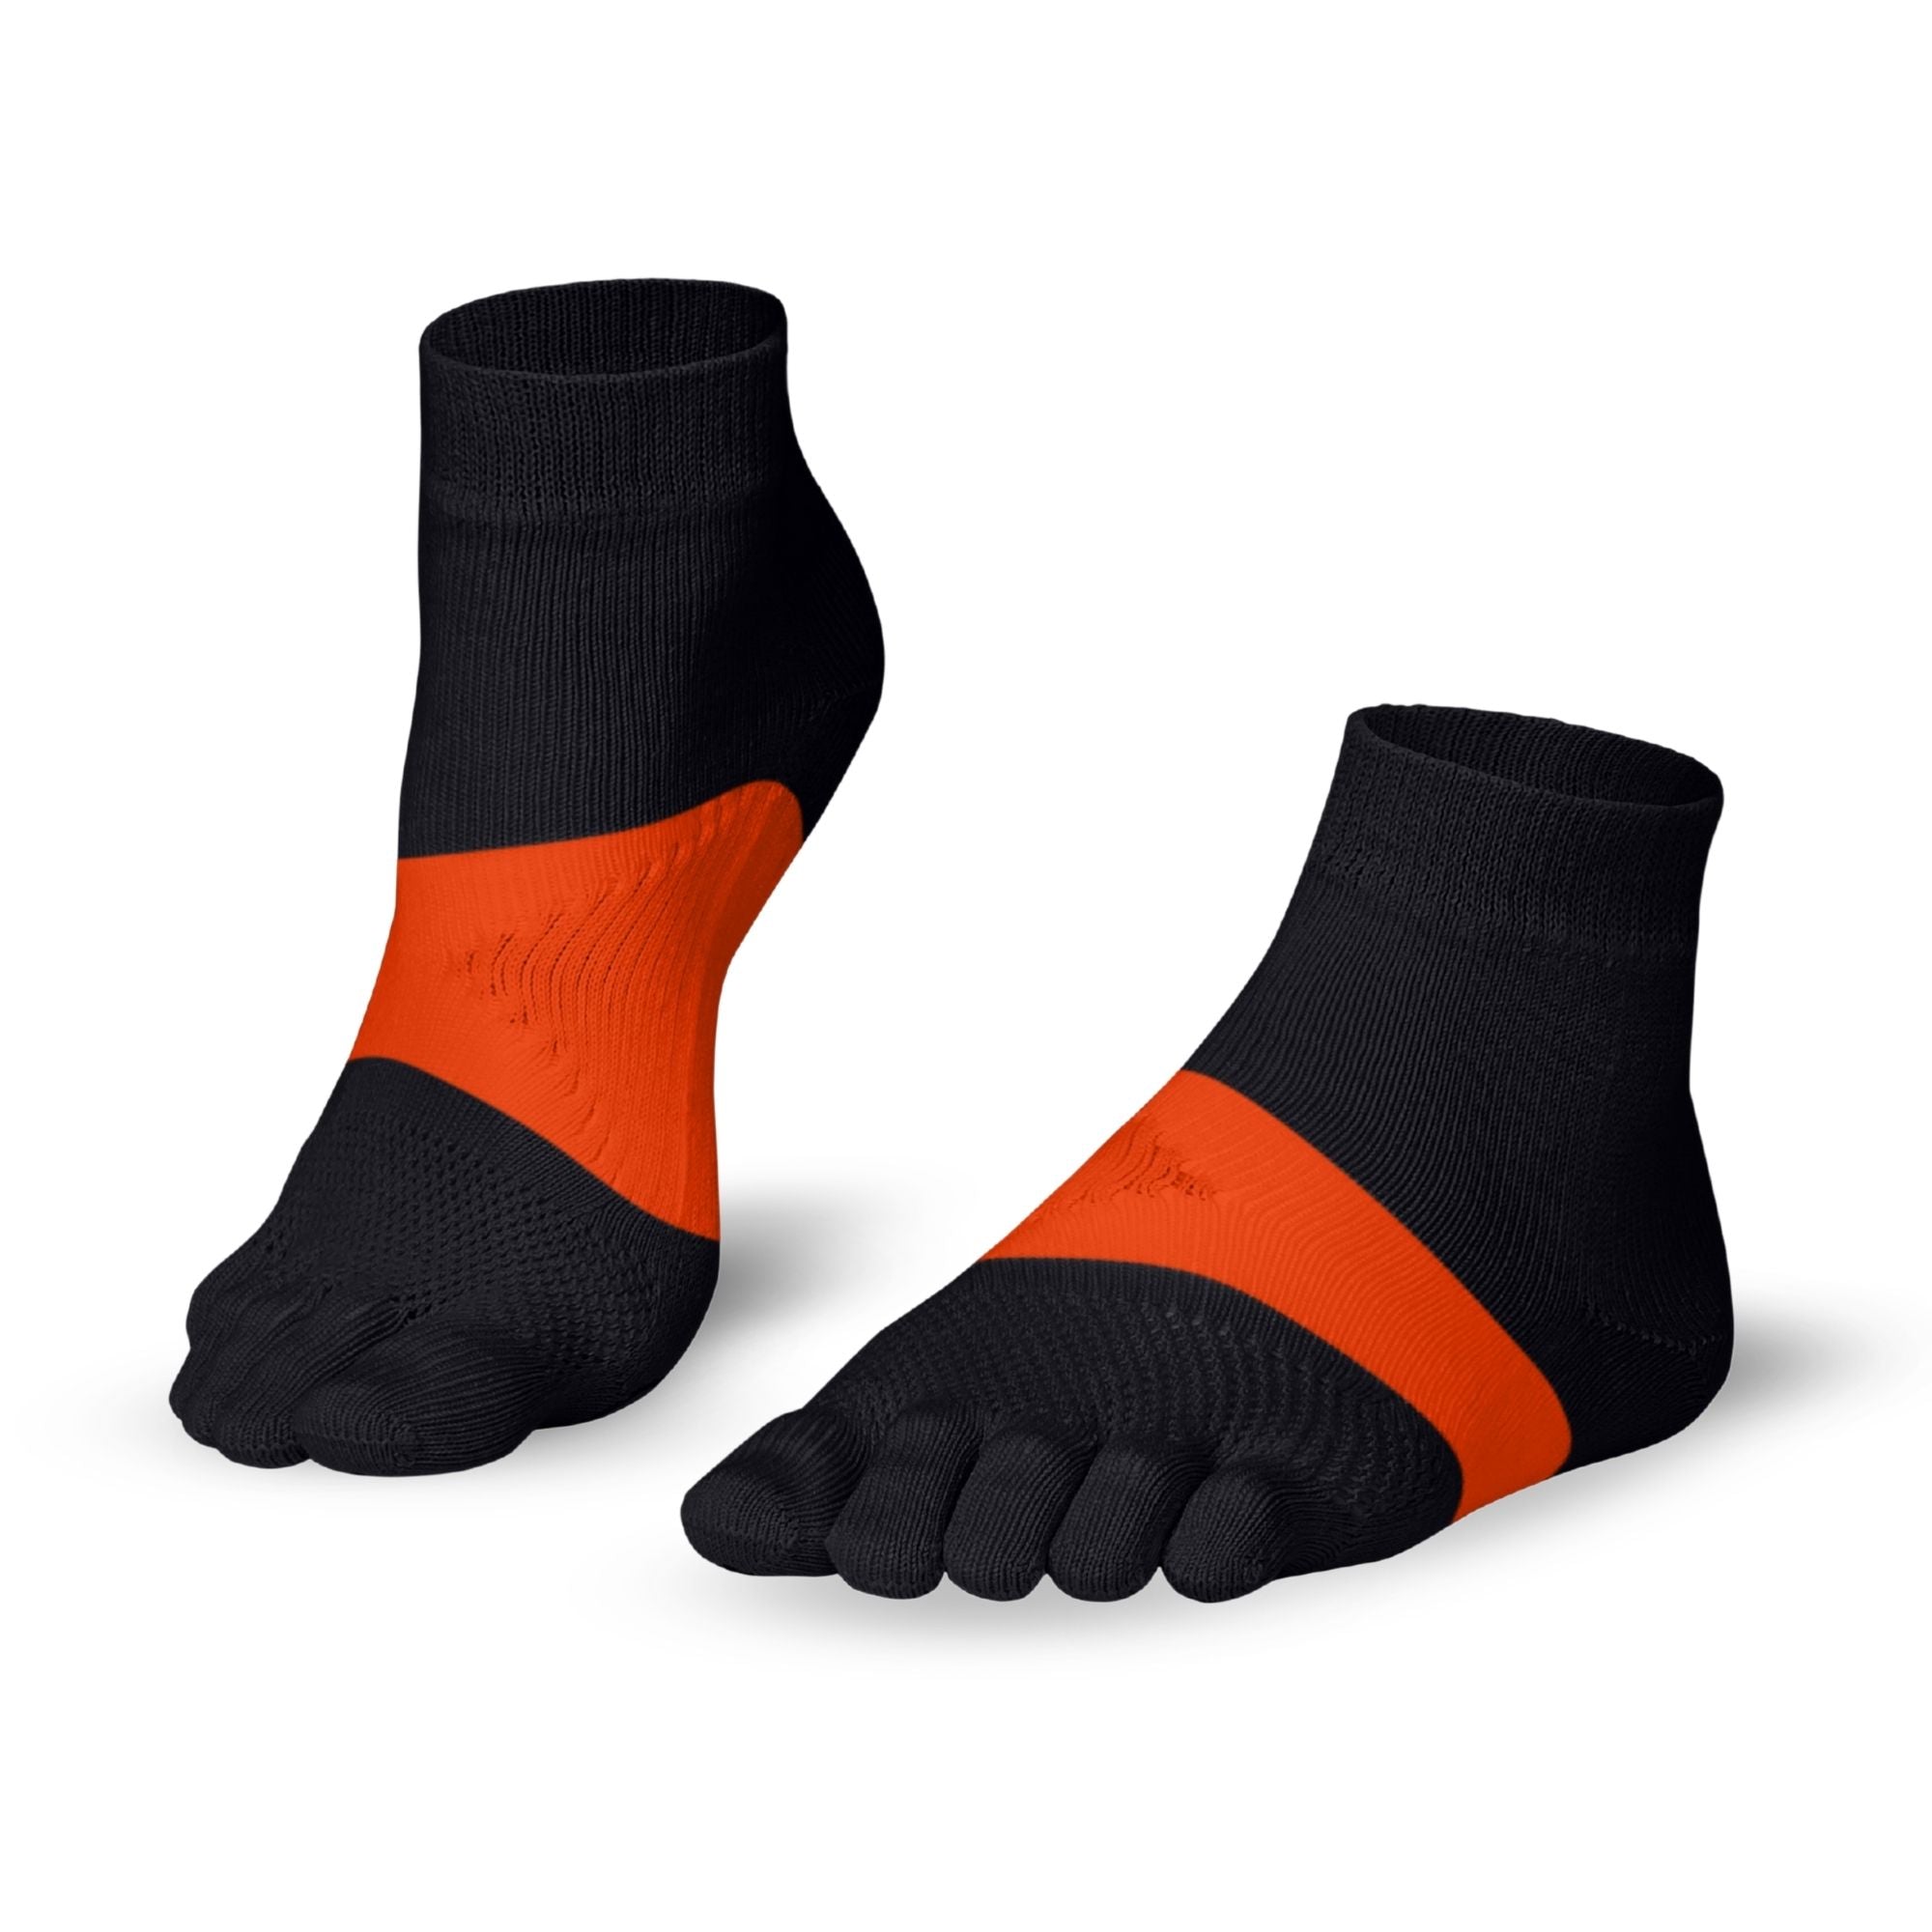 Knitido Marathon chaussettes à orteils pour le sport et les courses de longue distance - gris / orange